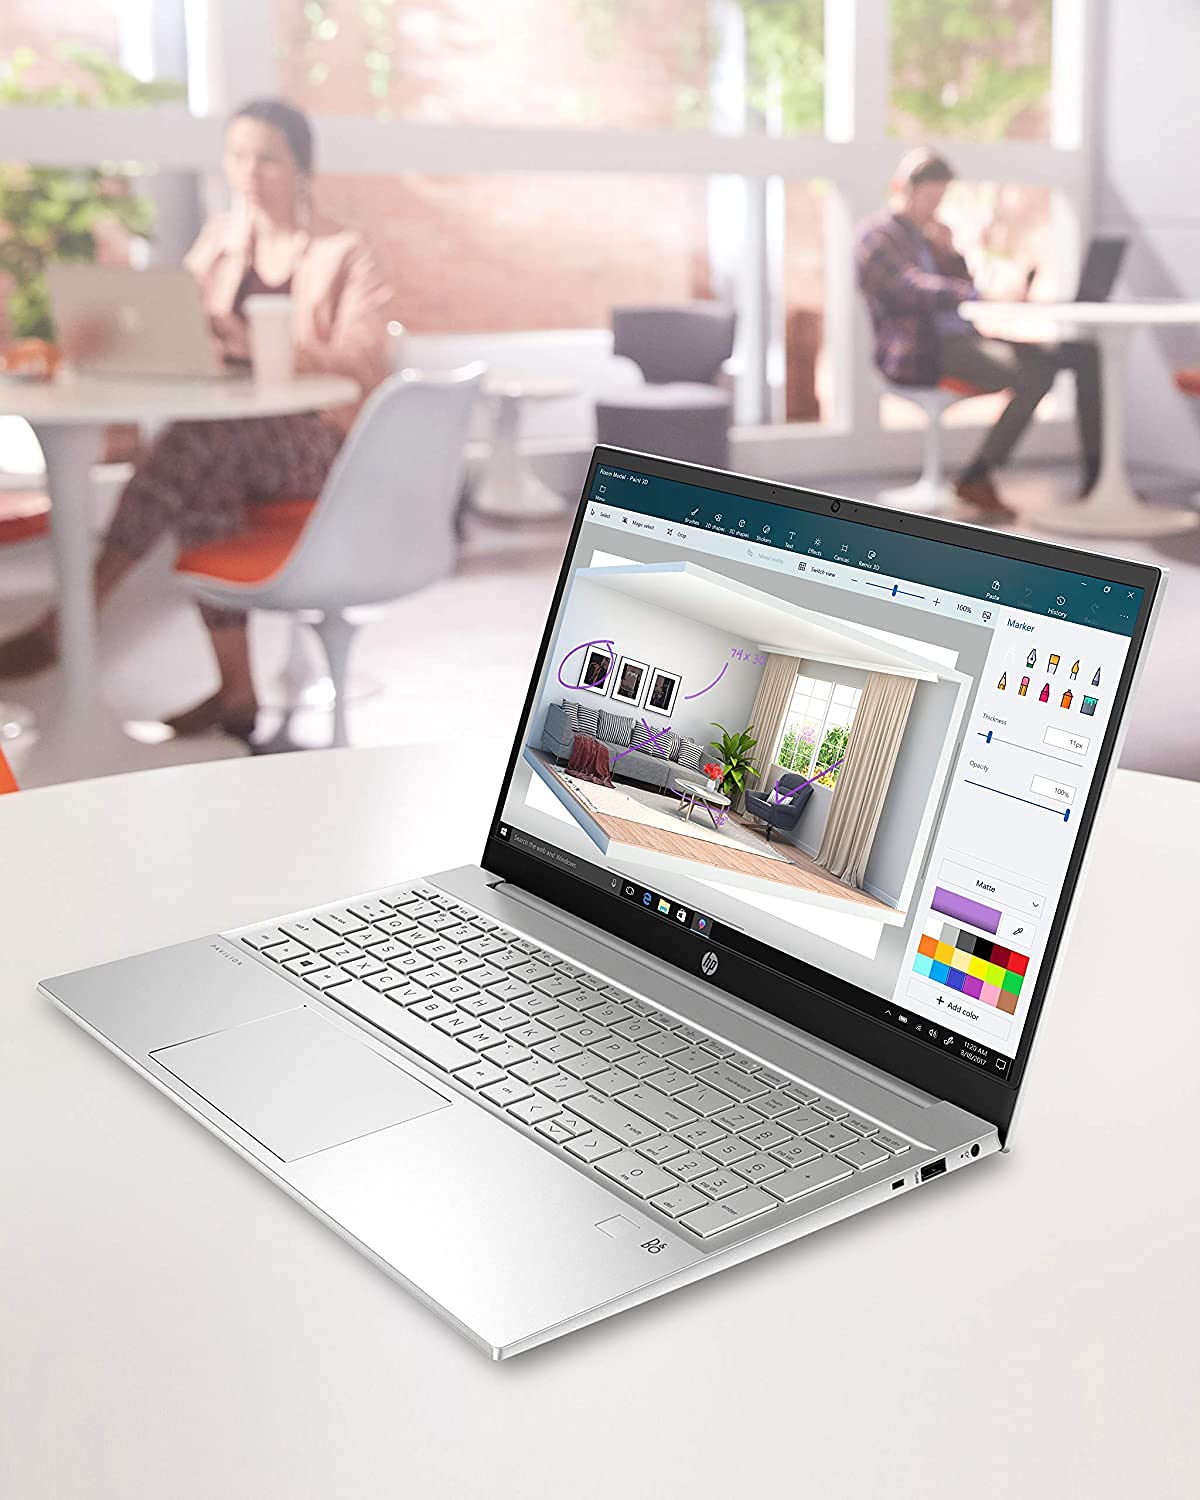 2021 Newest HP Pavilion Laptop, 15.6